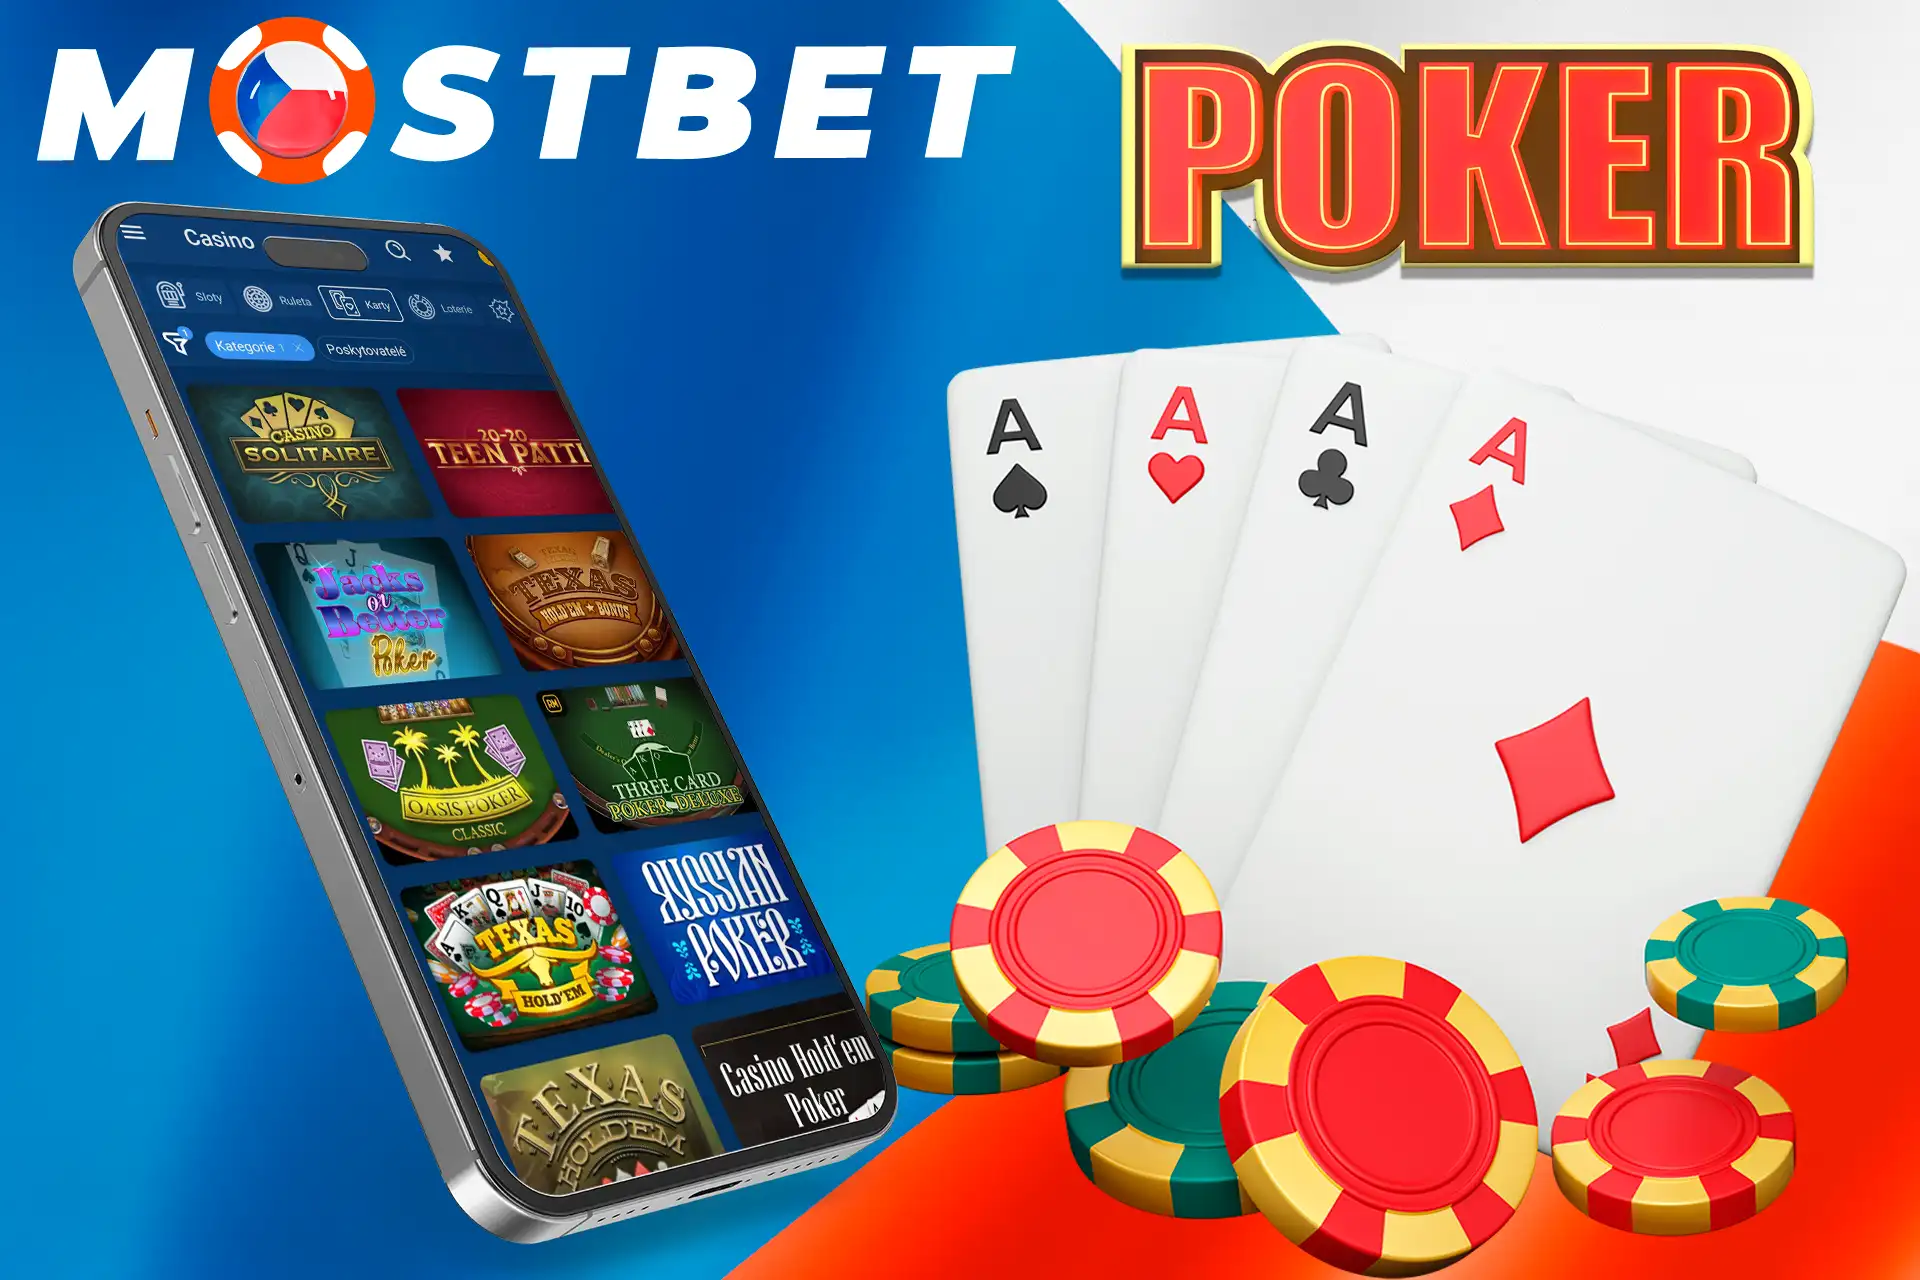 Různé druhy pokeru v Mostbet Casino